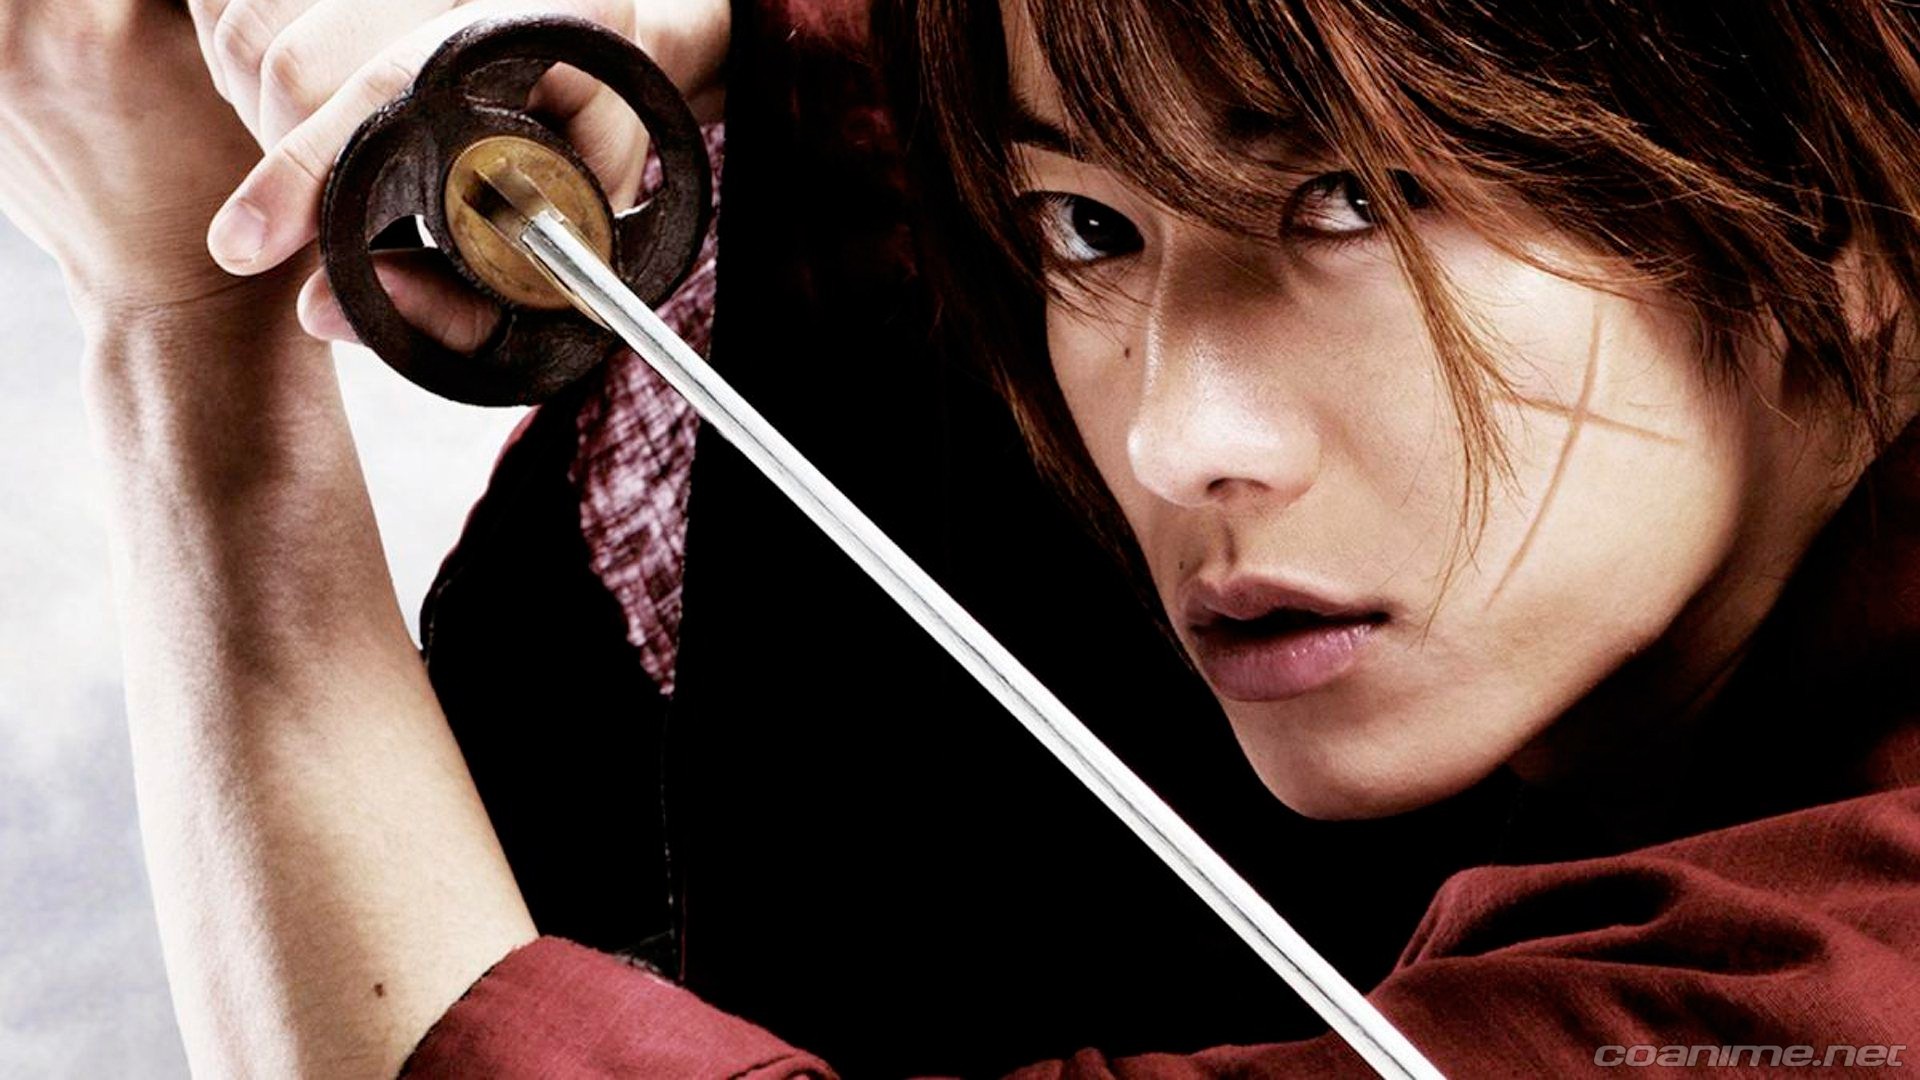 Rurouni Kenshin regresará con dos nuevas películas live-action  - Coanime.net